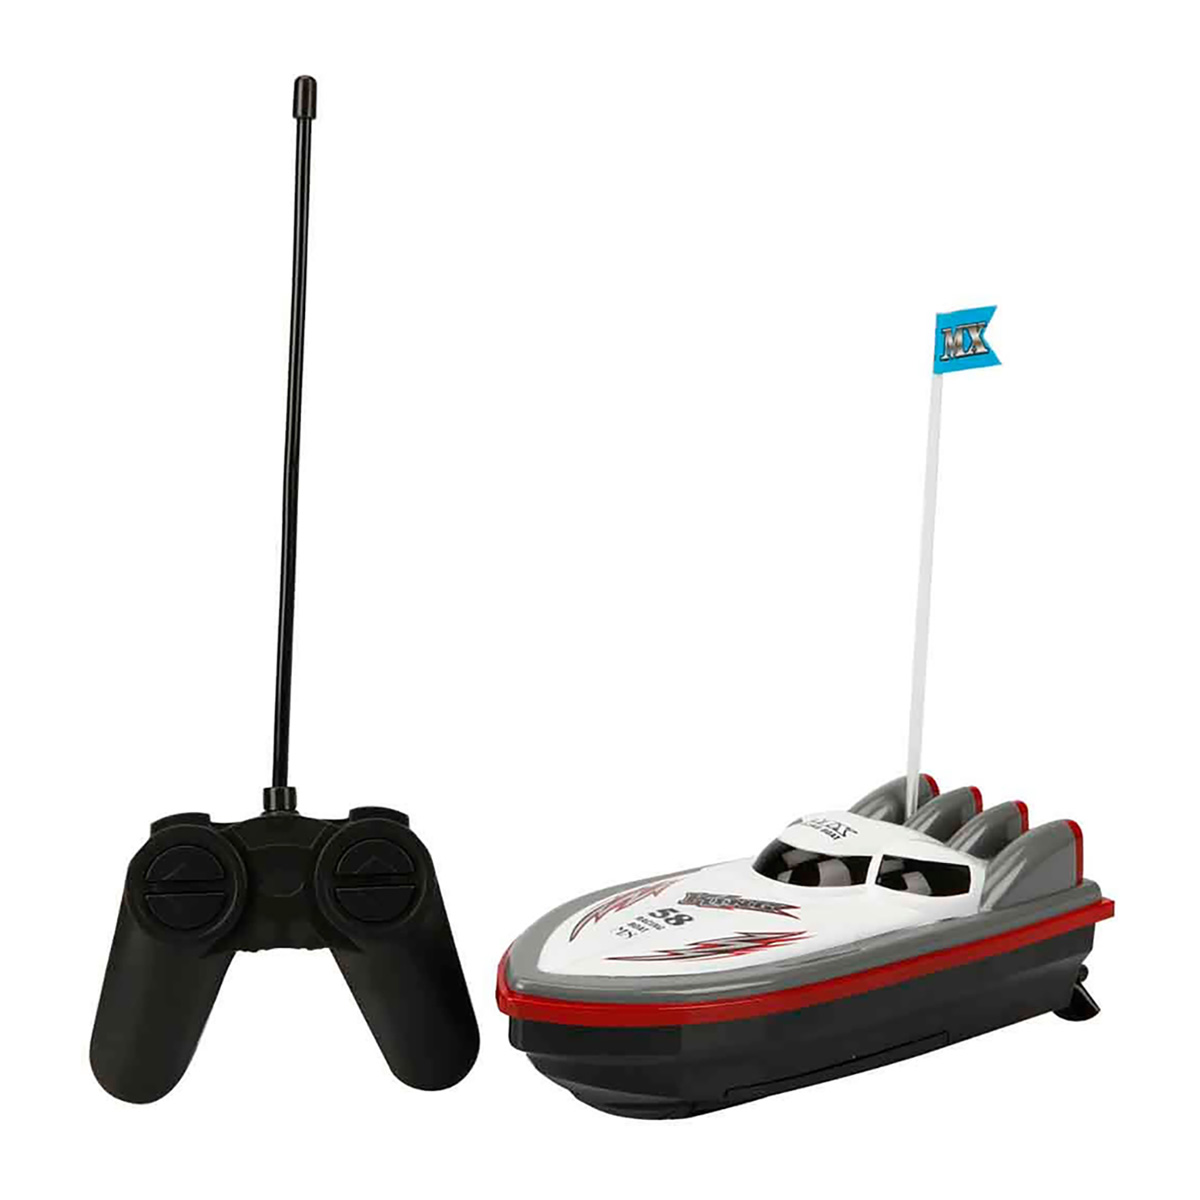 Barca cu telecomanda, Suncon, Alb-Gri, 20 cm Alb/Gri imagine 2022 protejamcopilaria.ro